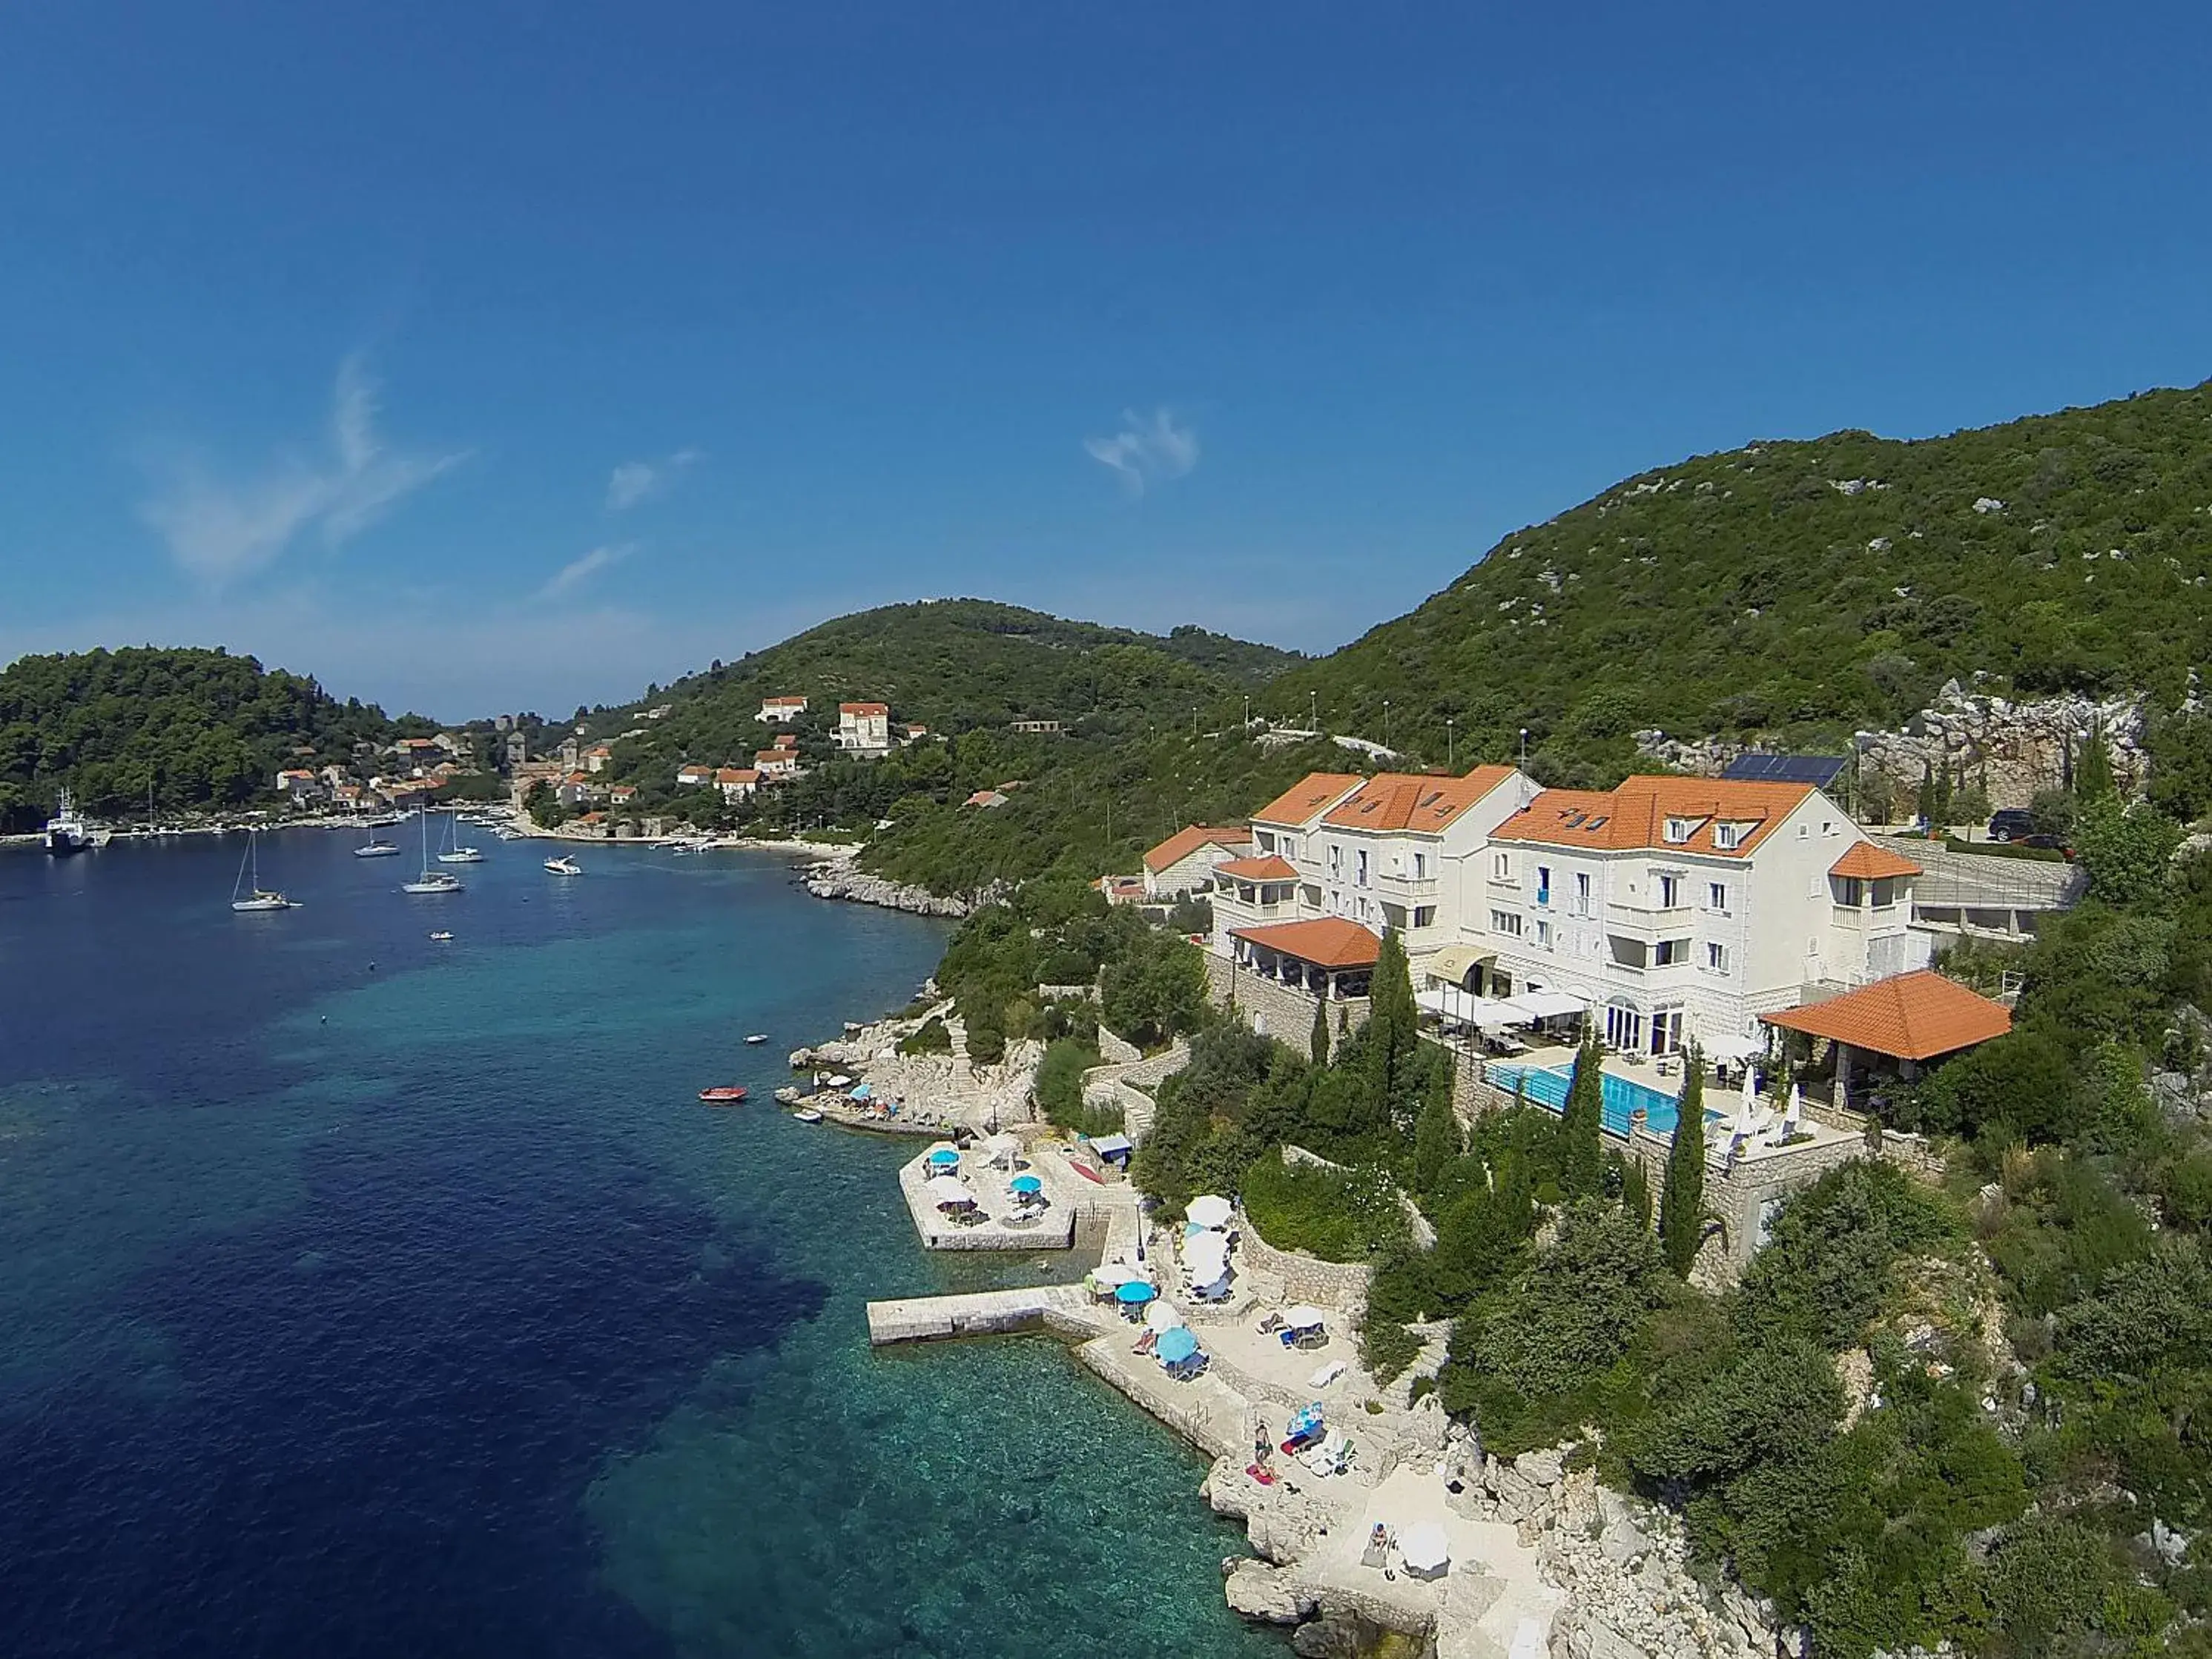 Spring, Bird's-eye View in Hotel Bozica Dubrovnik Islands